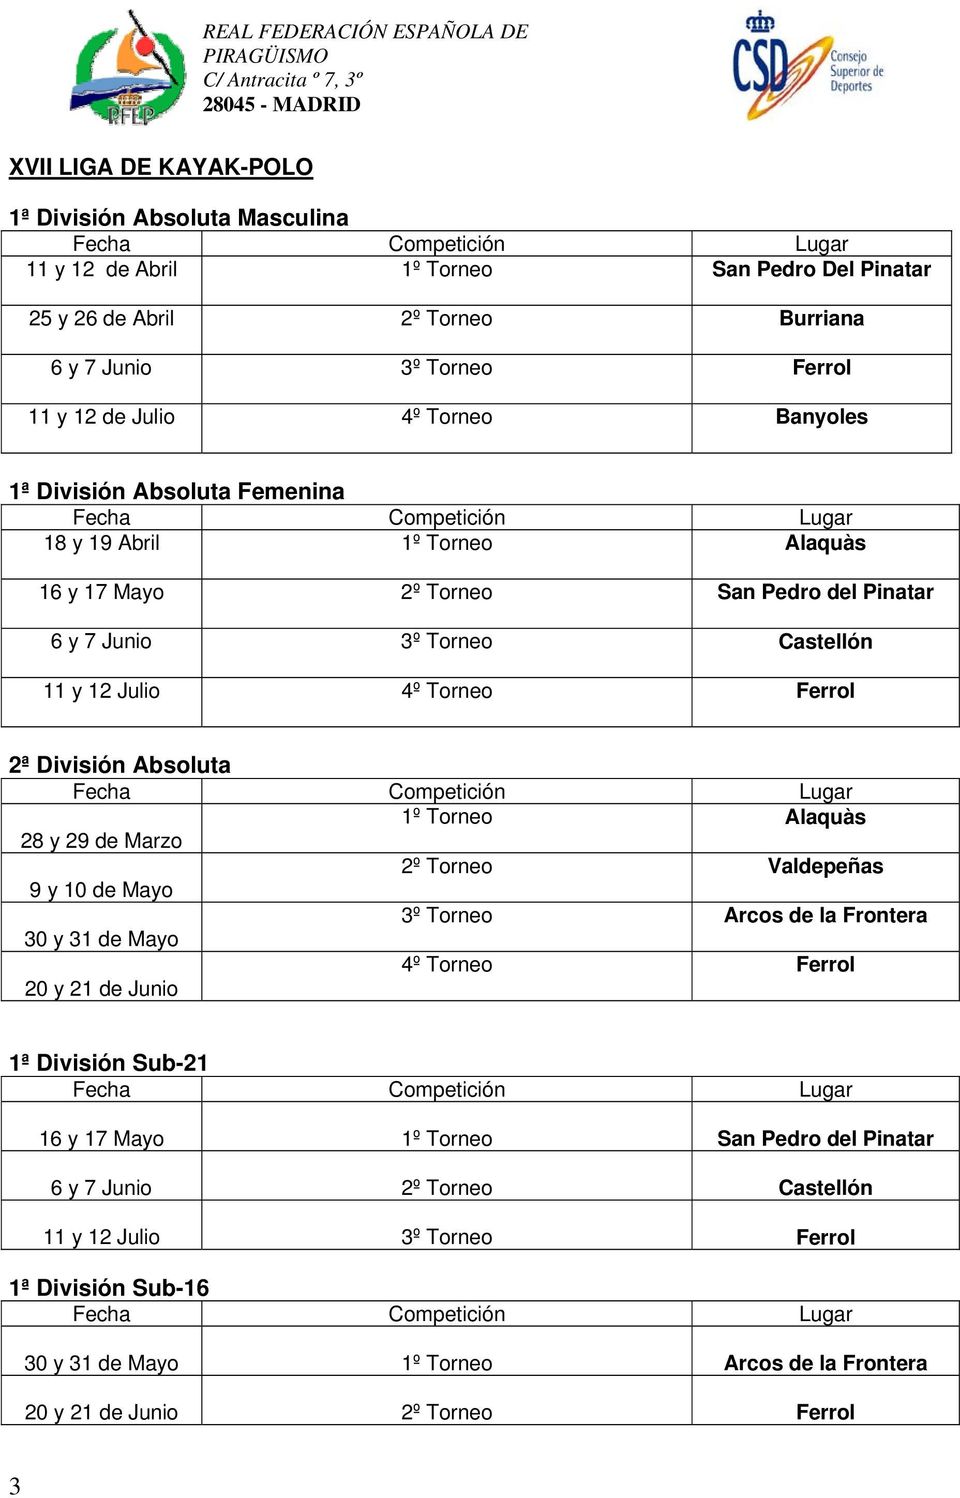 12 Julio 4º Torneo Ferrol 2ª División Absoluta Fecha Competición Lugar 1º Torneo Alaquàs 28 y 29 de Marzo 2º Torneo Valdepeñas 9 y 10 de Mayo 3º Torneo Arcos de la Frontera 30 y 31 de Mayo 4º Torneo